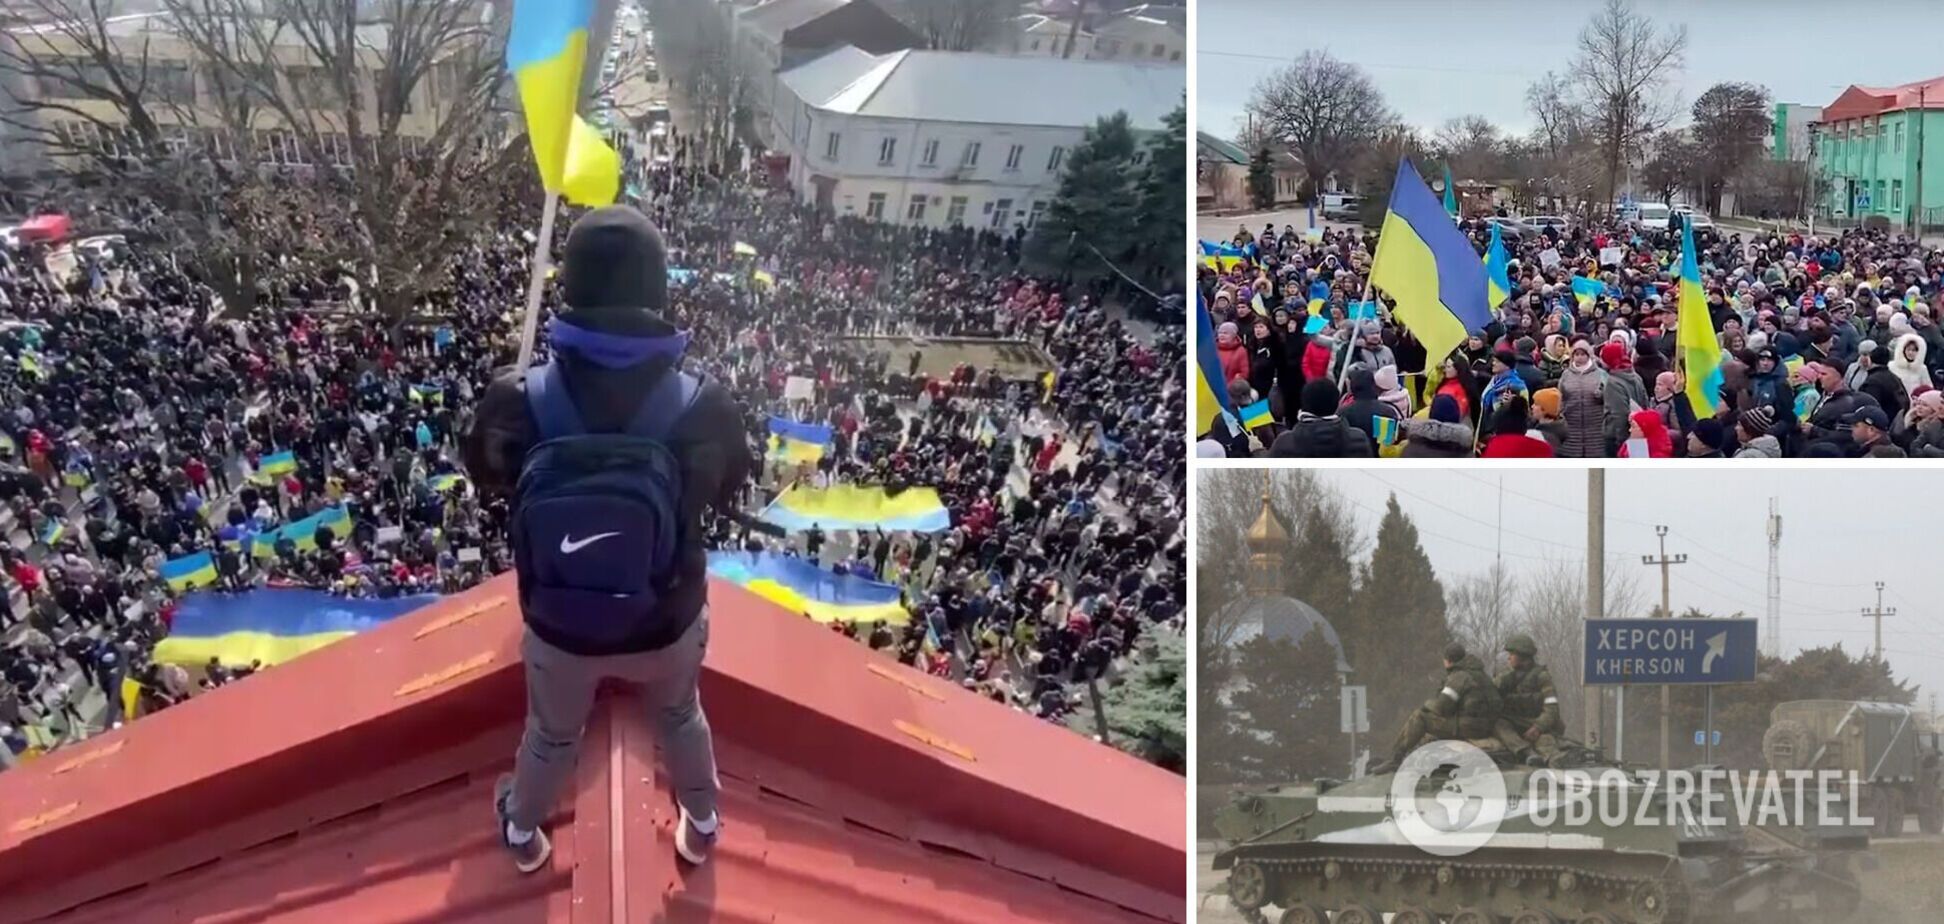 Що робити українцям, щоб вигнати окупантів: посібник з ненасильницького опору